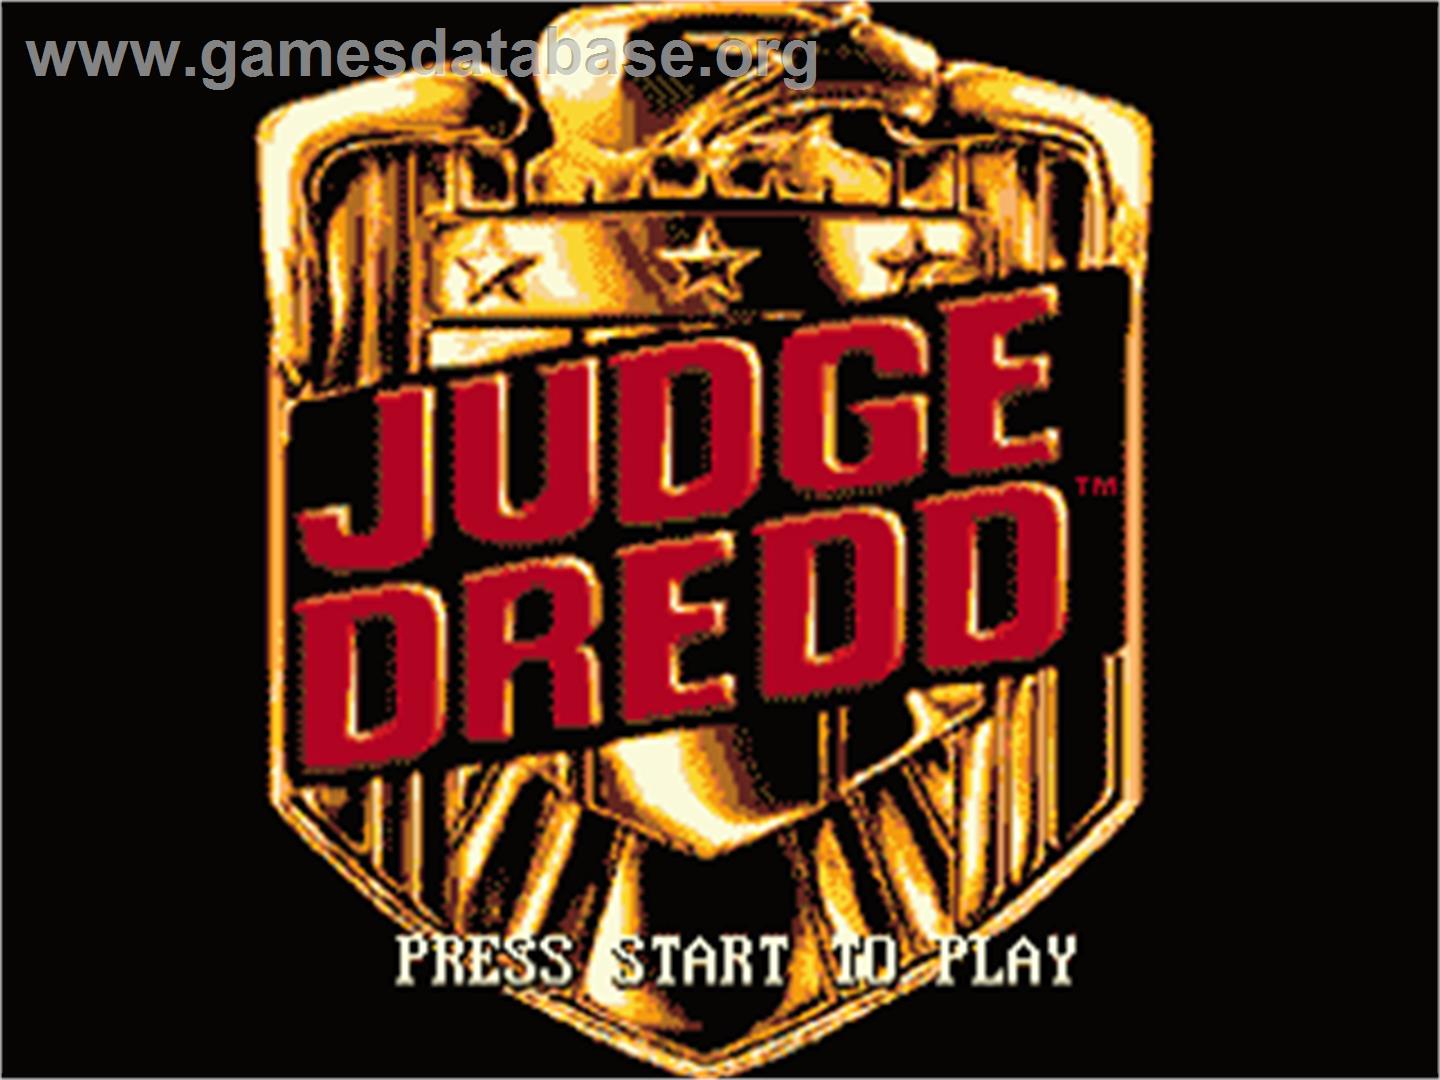 Judge Dredd - Sega Genesis - Artwork - Title Screen